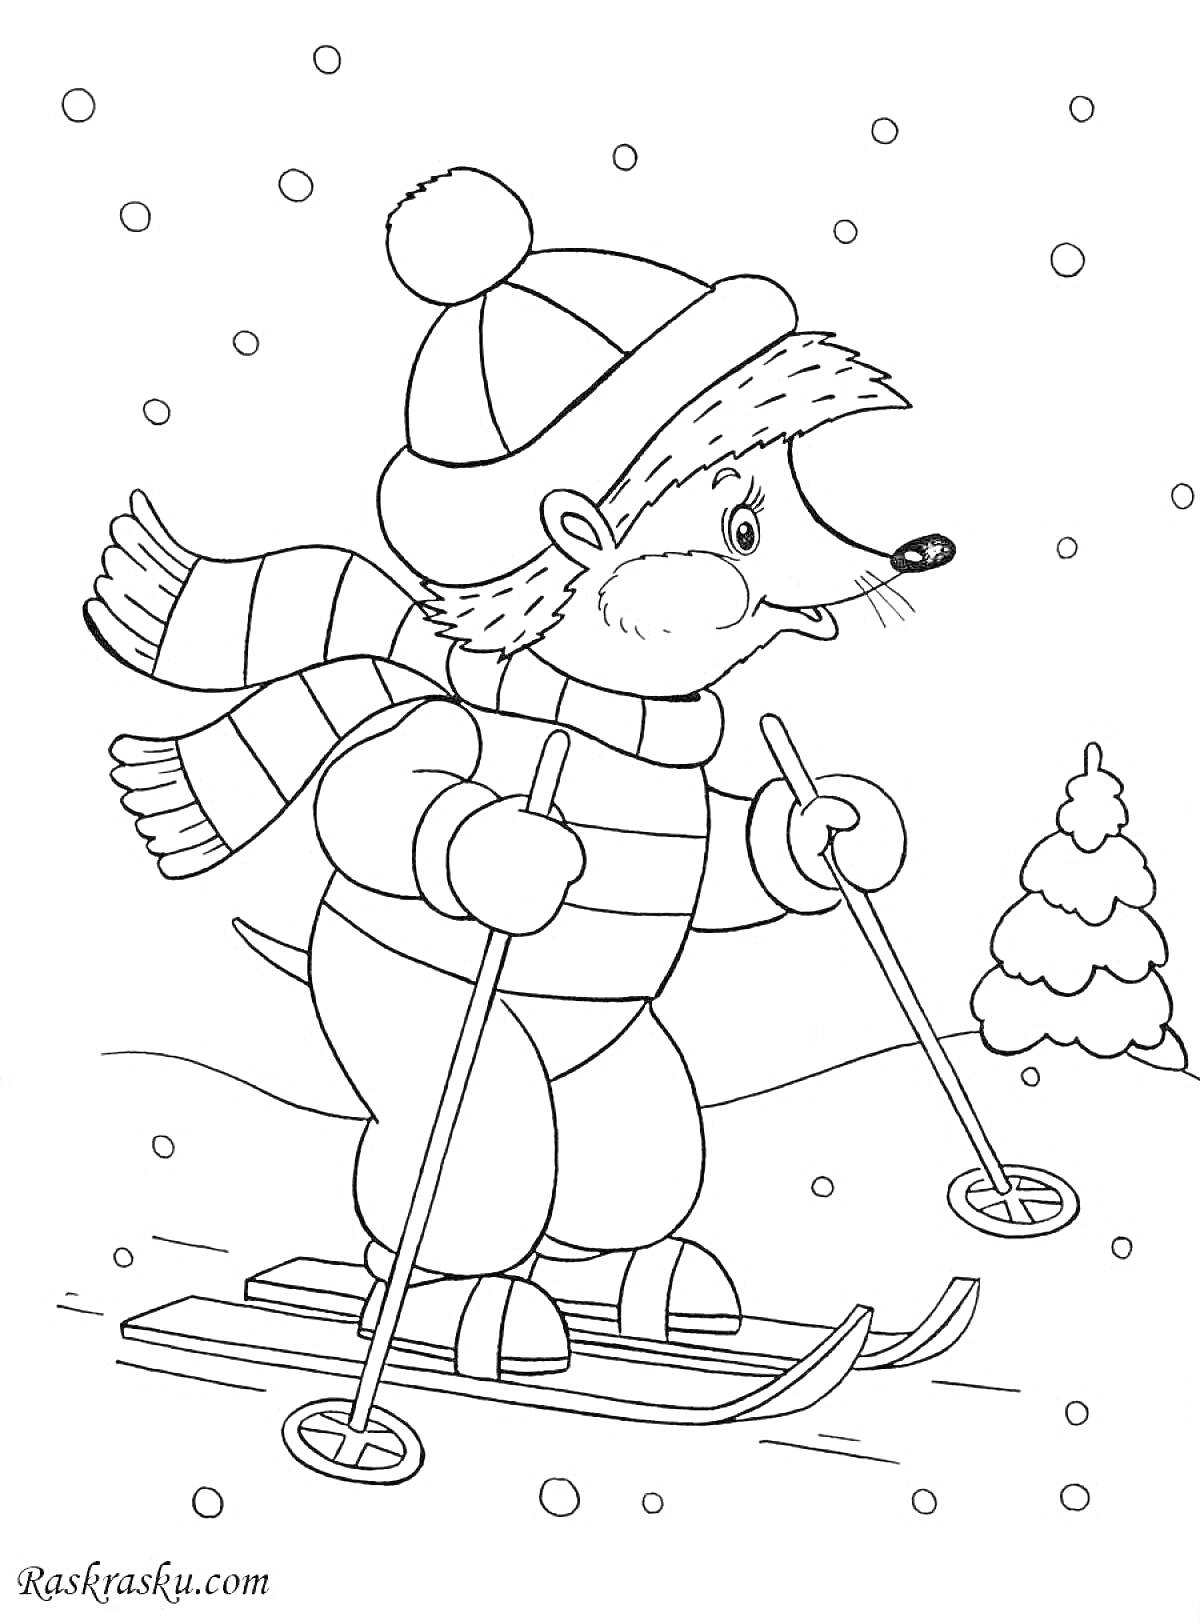 Раскраска Мышь на лыжах в зимнем лесу